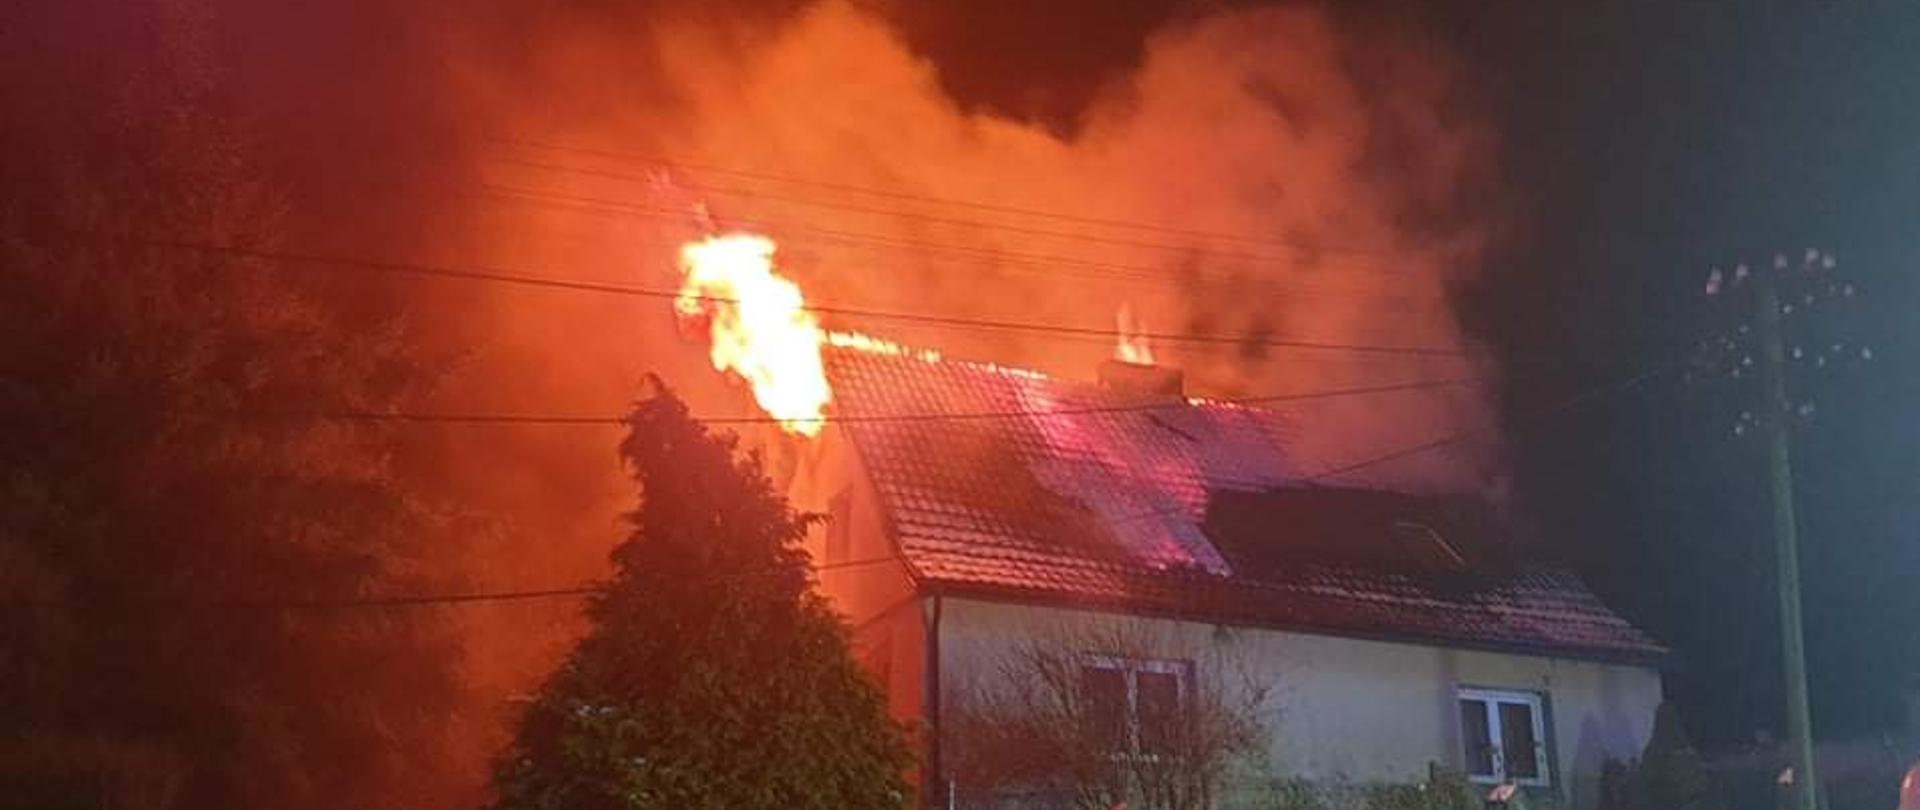 Na zdjęciu widać palący się dach budynku mieszkalnego ogień z lewej części dachu. 